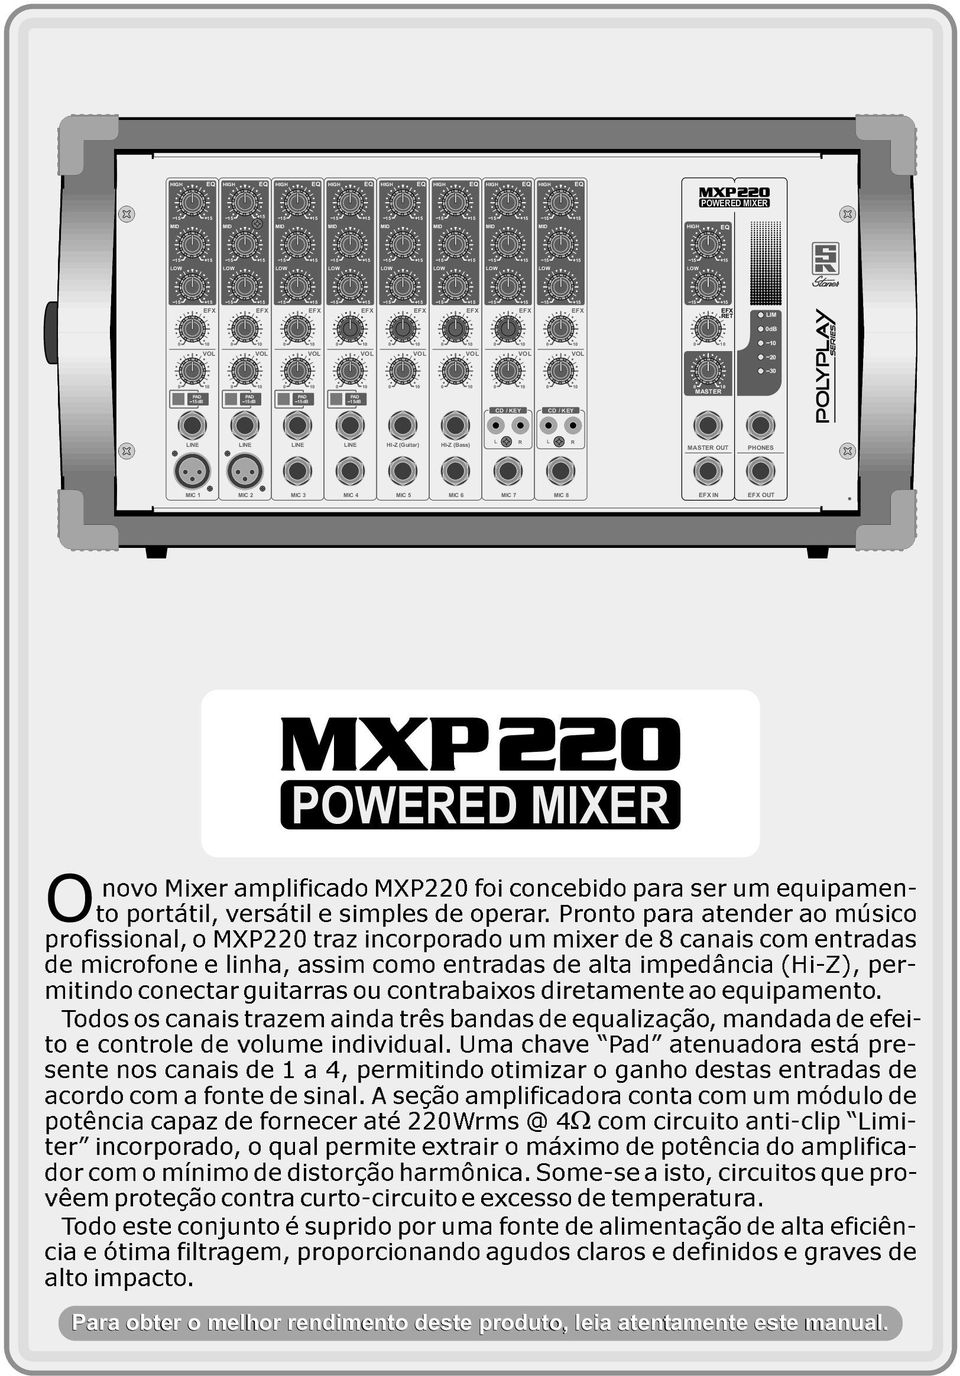 Pronto para atender ao músico profissional, o MXP22 traz incorporado um mixer de 8 canais com entradas de microfone e linha, assim como entradas de alta impedância (Hi-Z), permitindo conectar